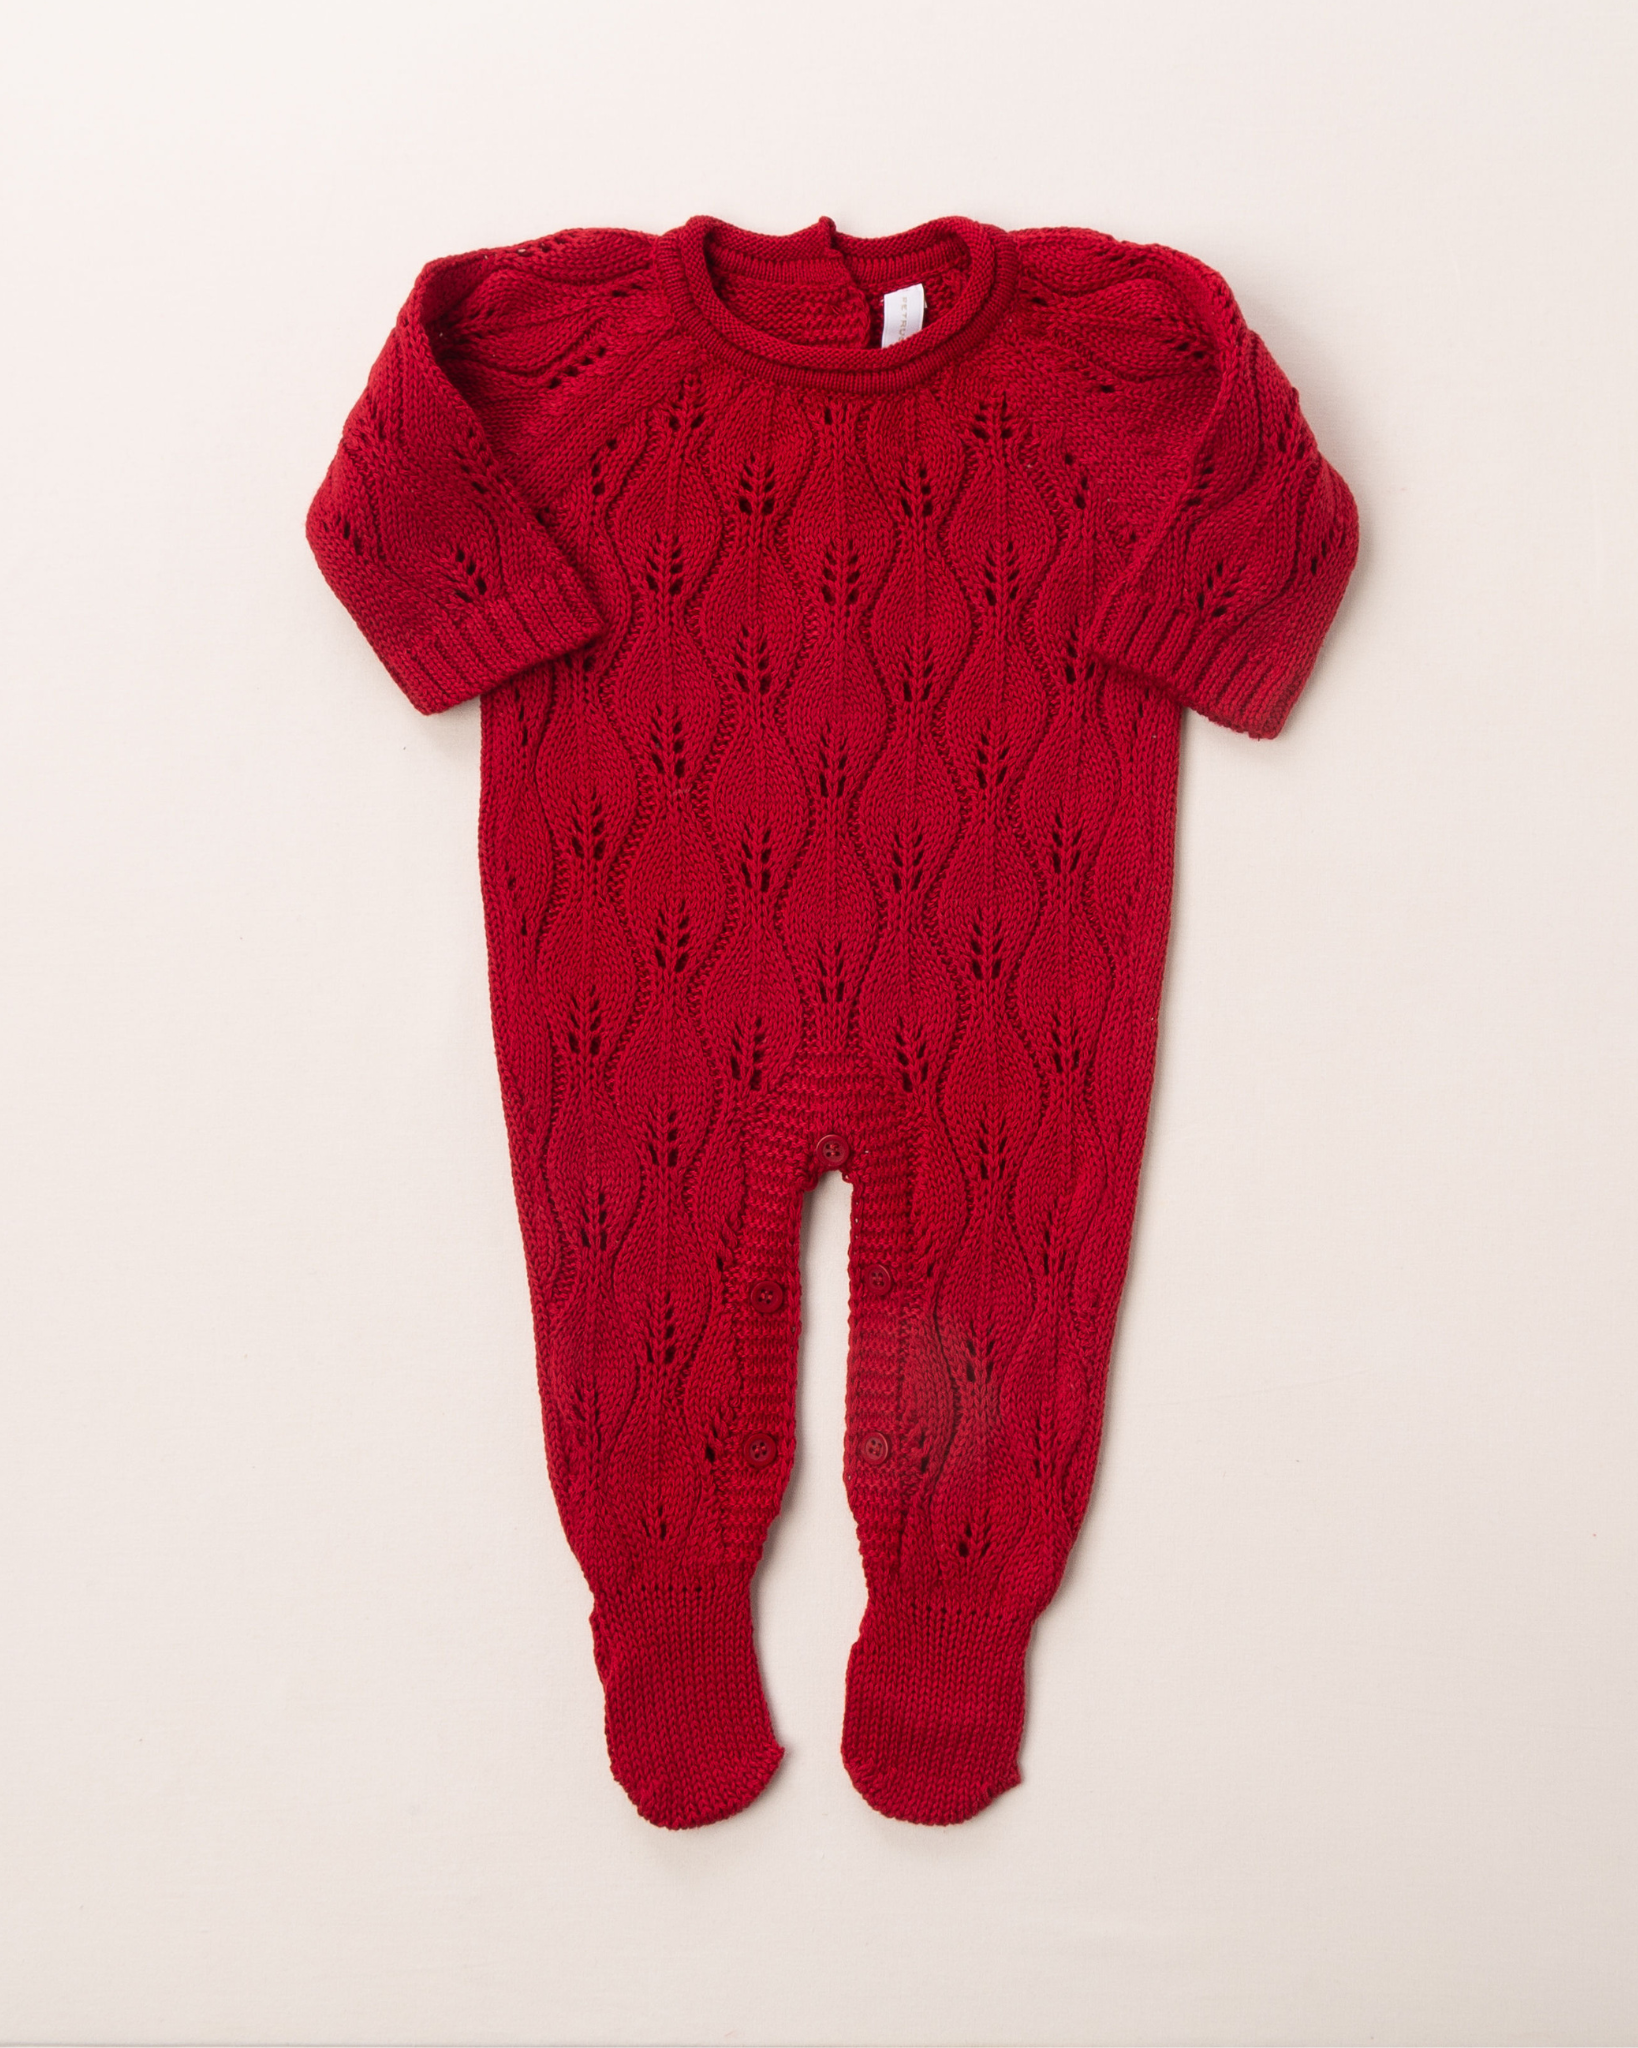 O macacão em tricô vermelho é encantador, com uma trama delicada que chama a atenção. Ele é prático para a troca da bebê, com abotoamento nas entrepernas e costas, facilitando a troca sem perder o charme.